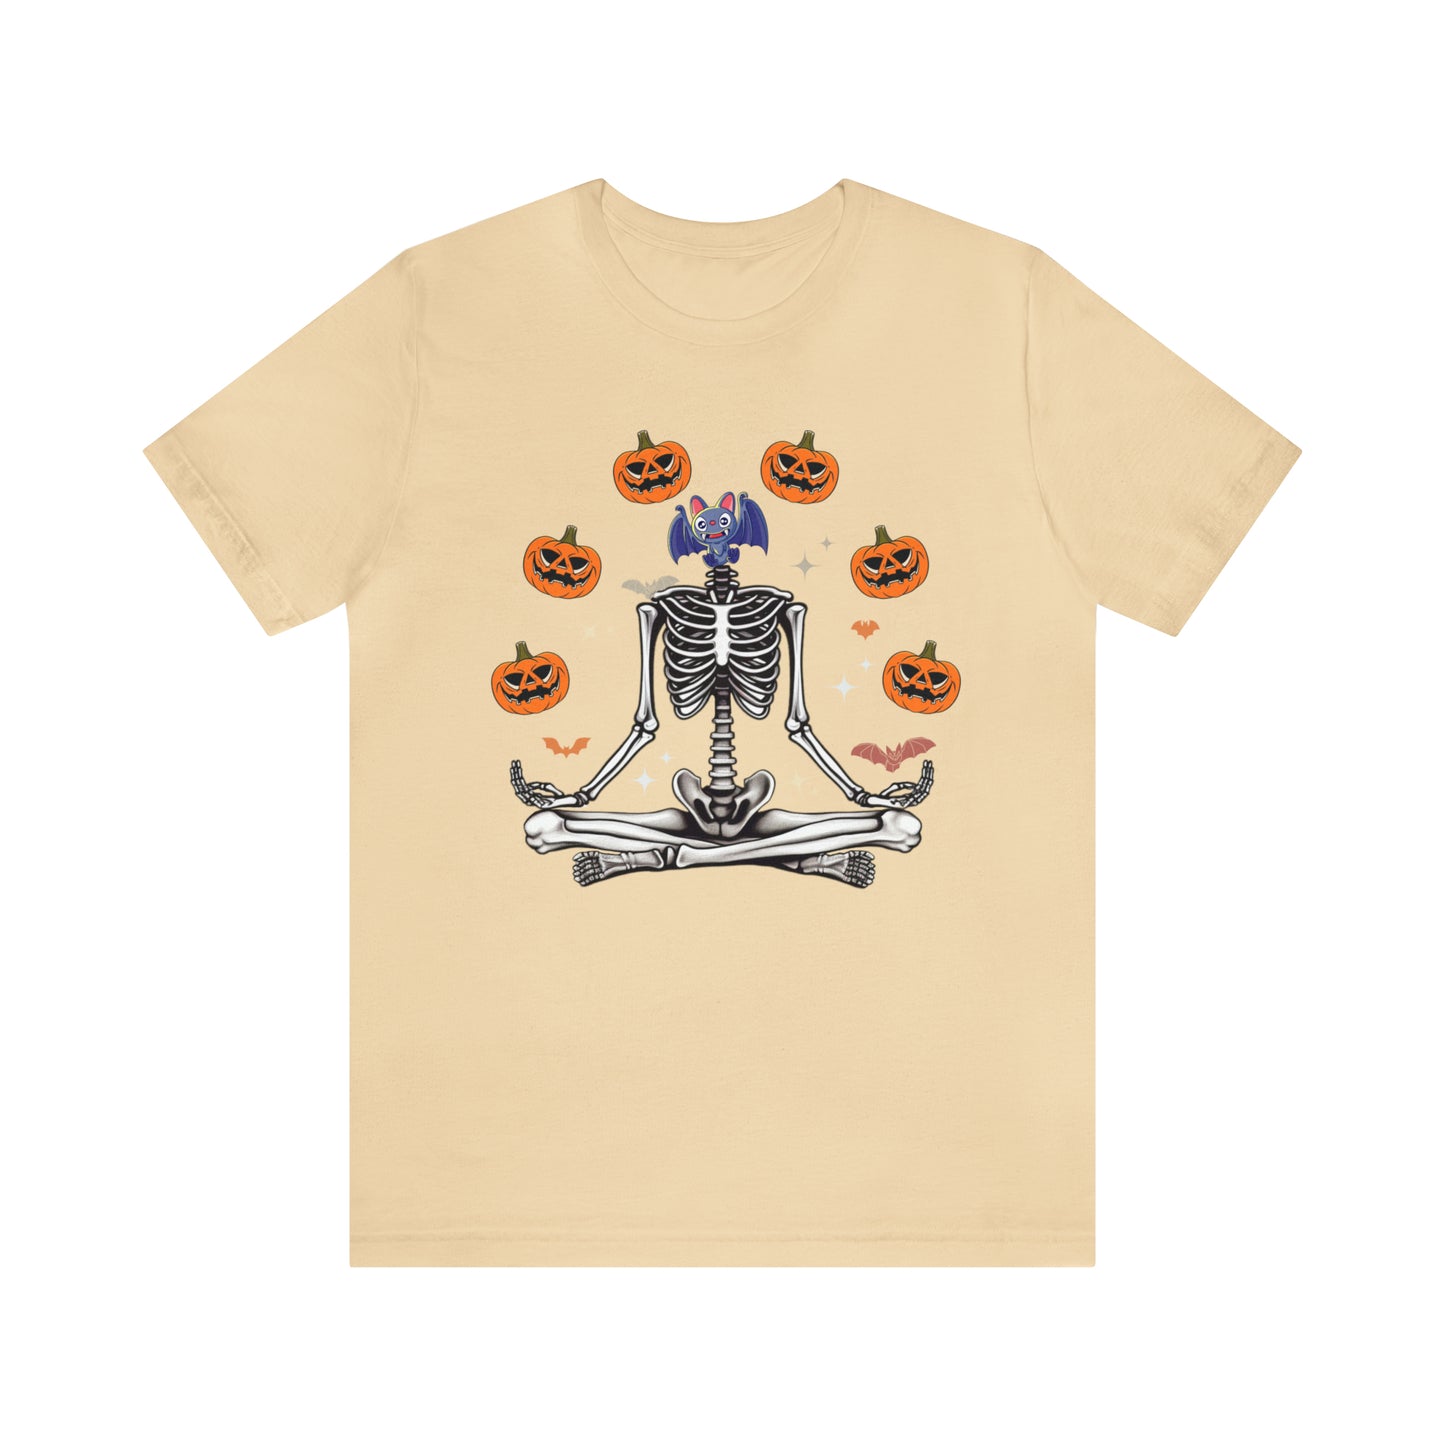 Skeleton Pumpkin Shirt, Cute Pumpkin Shirt, Halloween Costume, Ribcage Skeleton Shirt, Pumpkin Shirt, Pumpkin Costume, T727